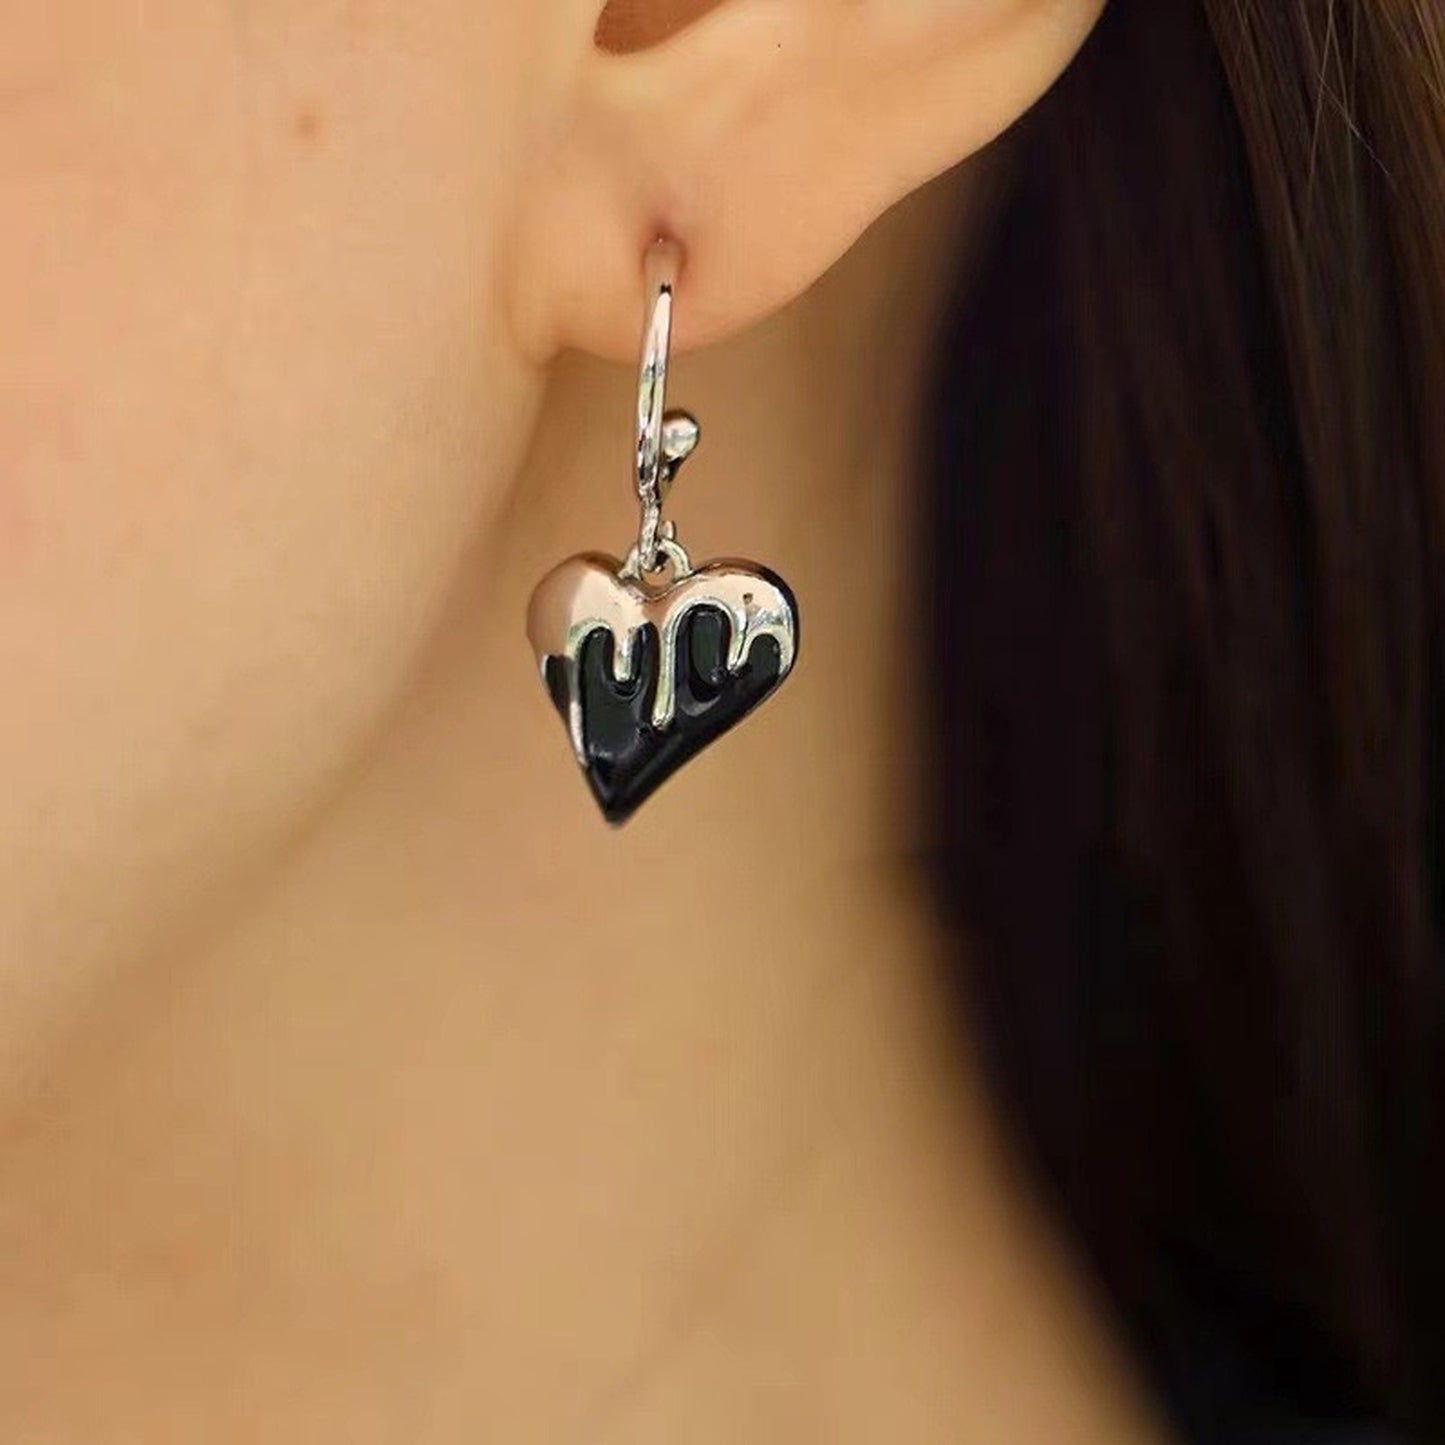 Dark Gothic earrings, Melting heart dangle earrings, Silver hoop earrings, Black spade earrings, Punk tattoo graffiti jewelry, Unisex gifts